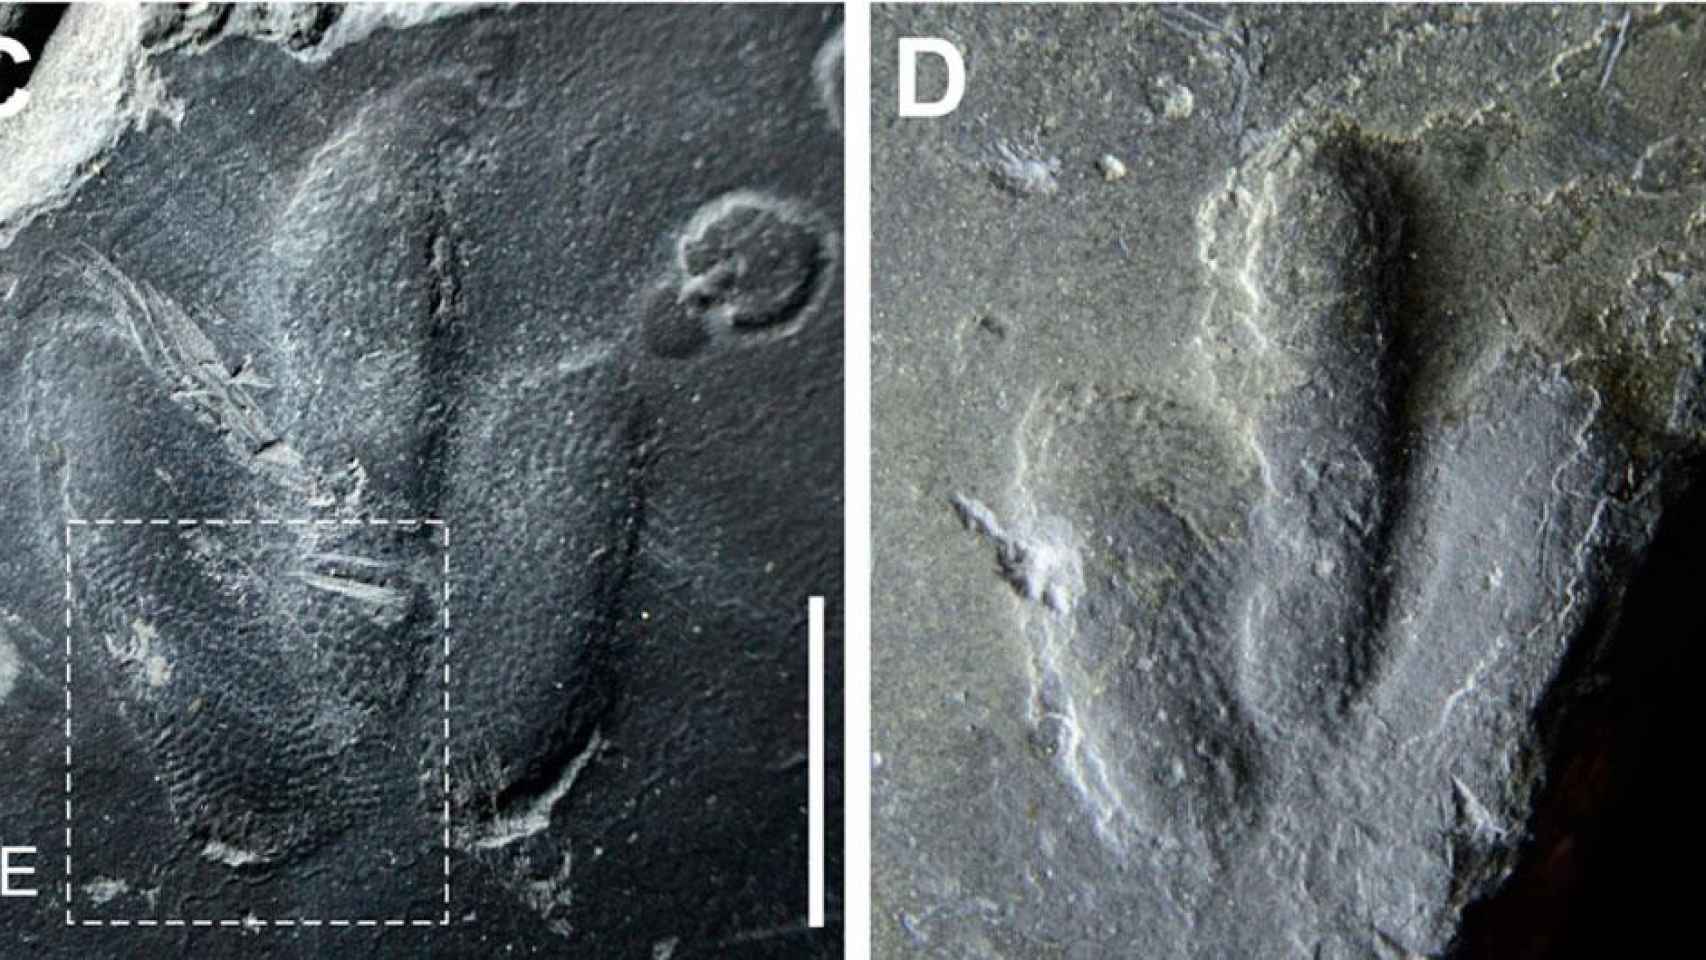 Huellas de dinosaurio encontradas en Corea / SCIENTIFIC REPORTS